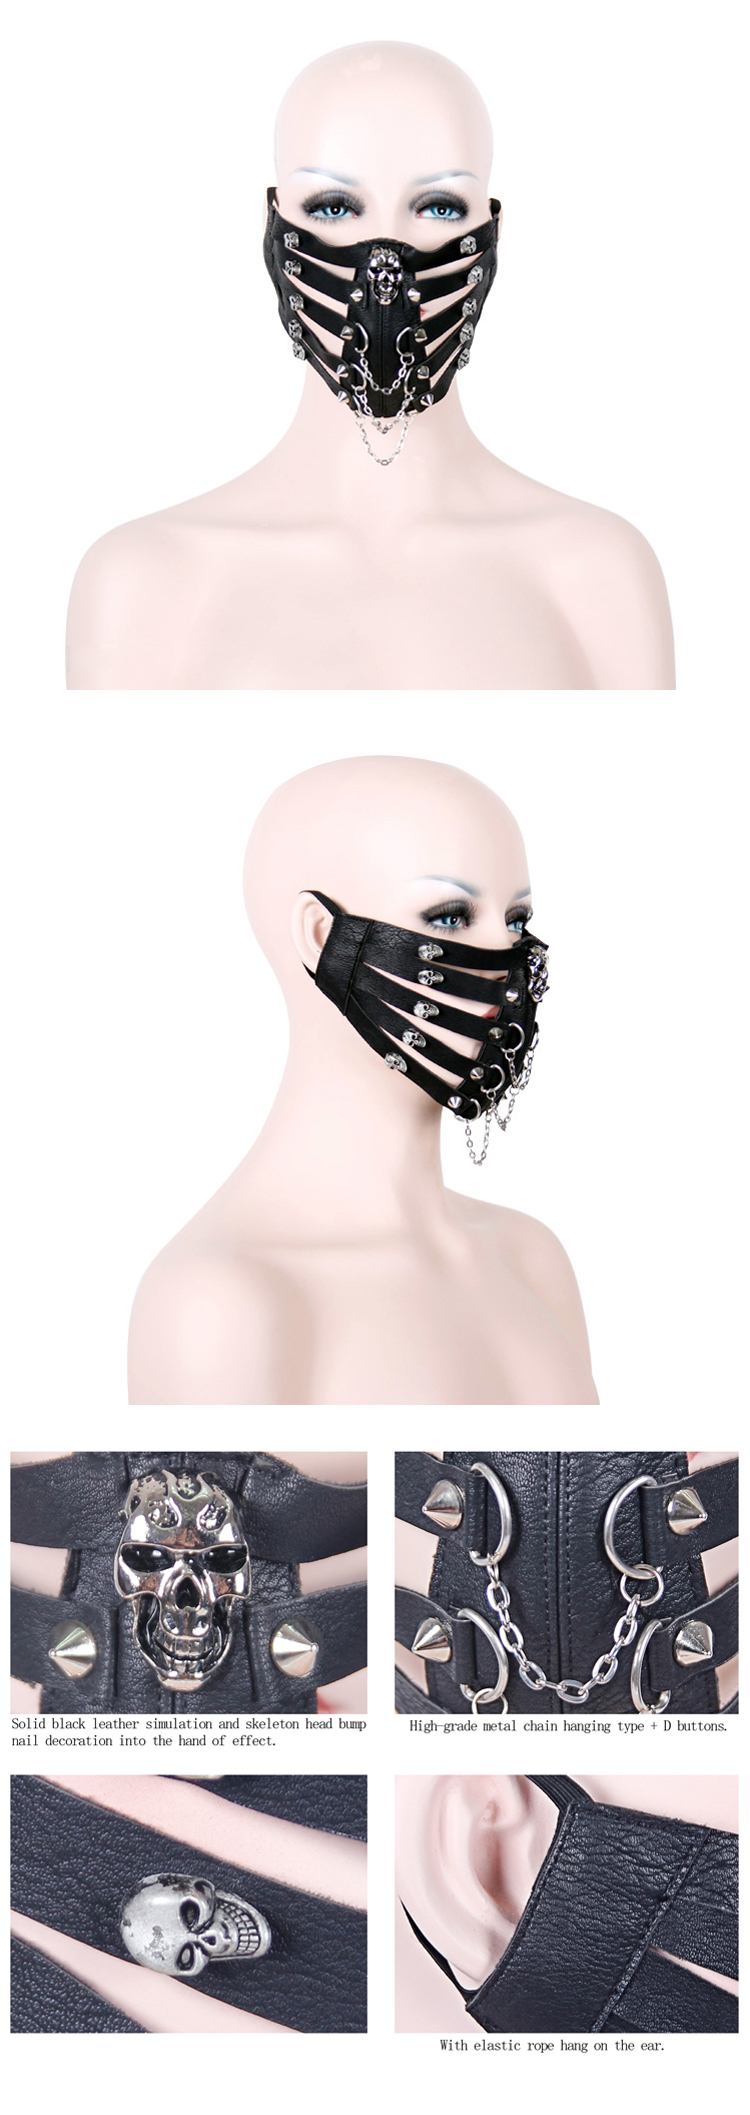 steampunk-skull-half-face-mask-08.jpg